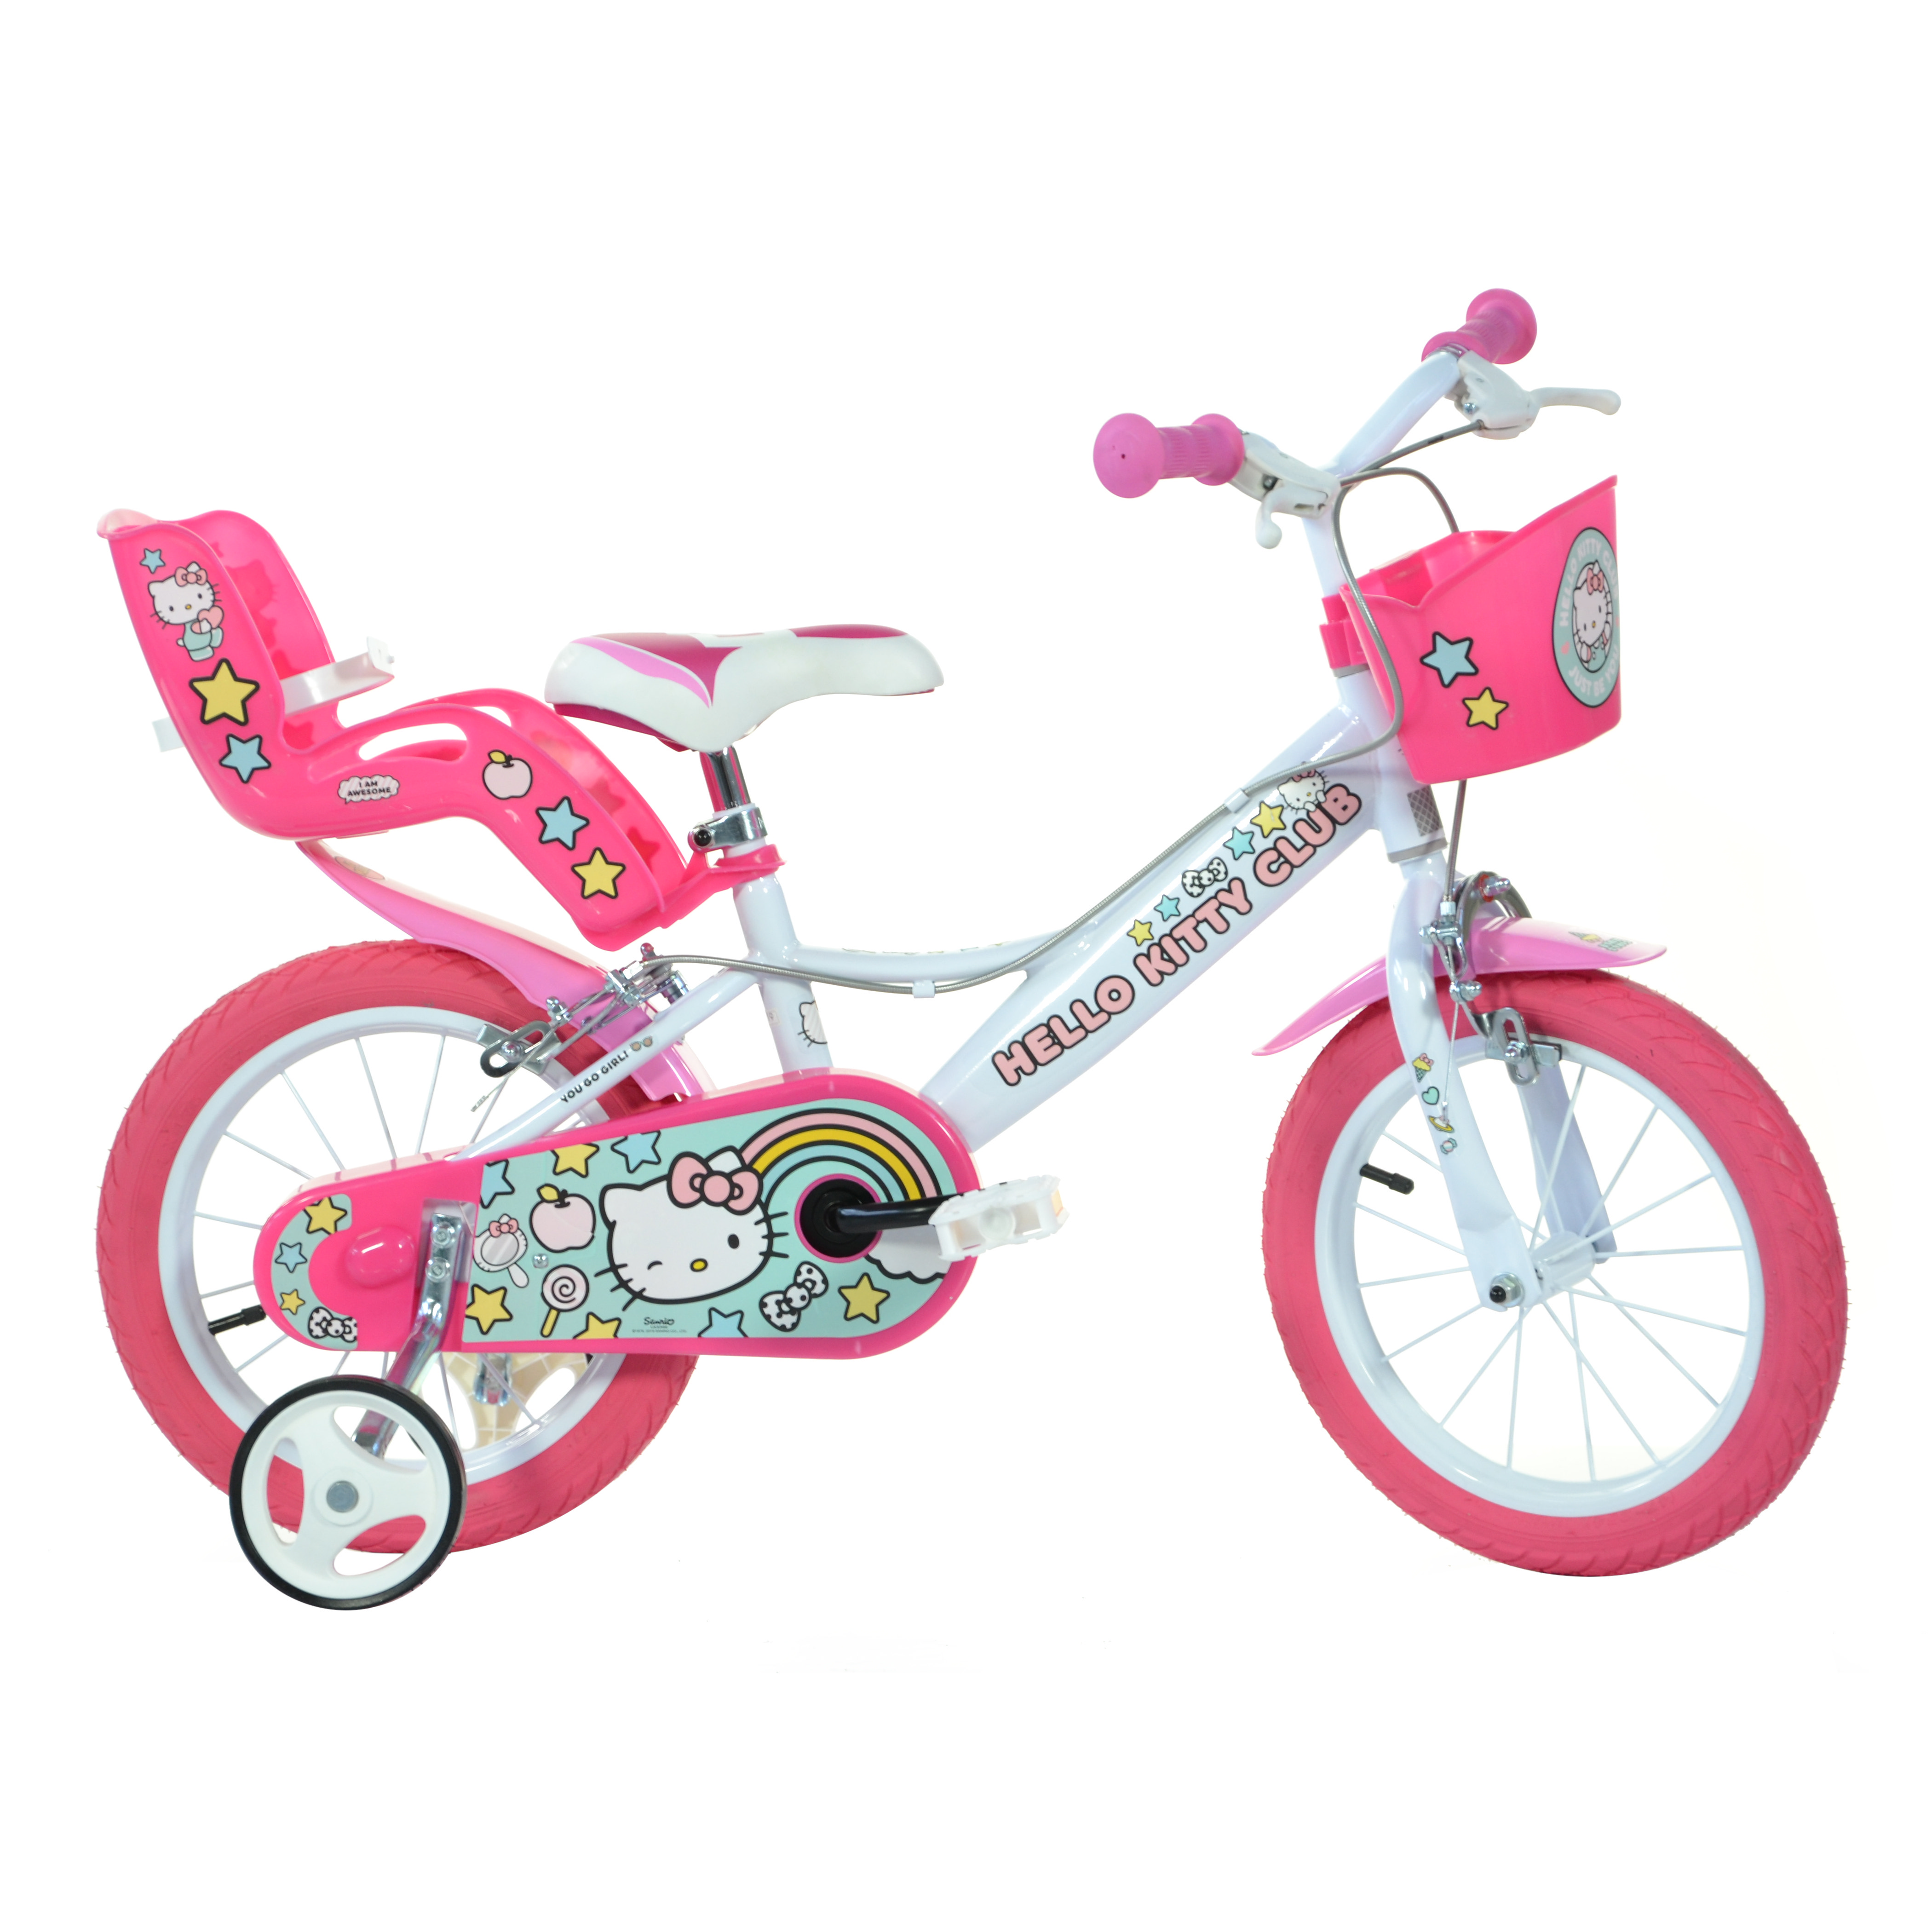 vidaXL Bicicleta para niños 24 pulgadas rosa y blanco